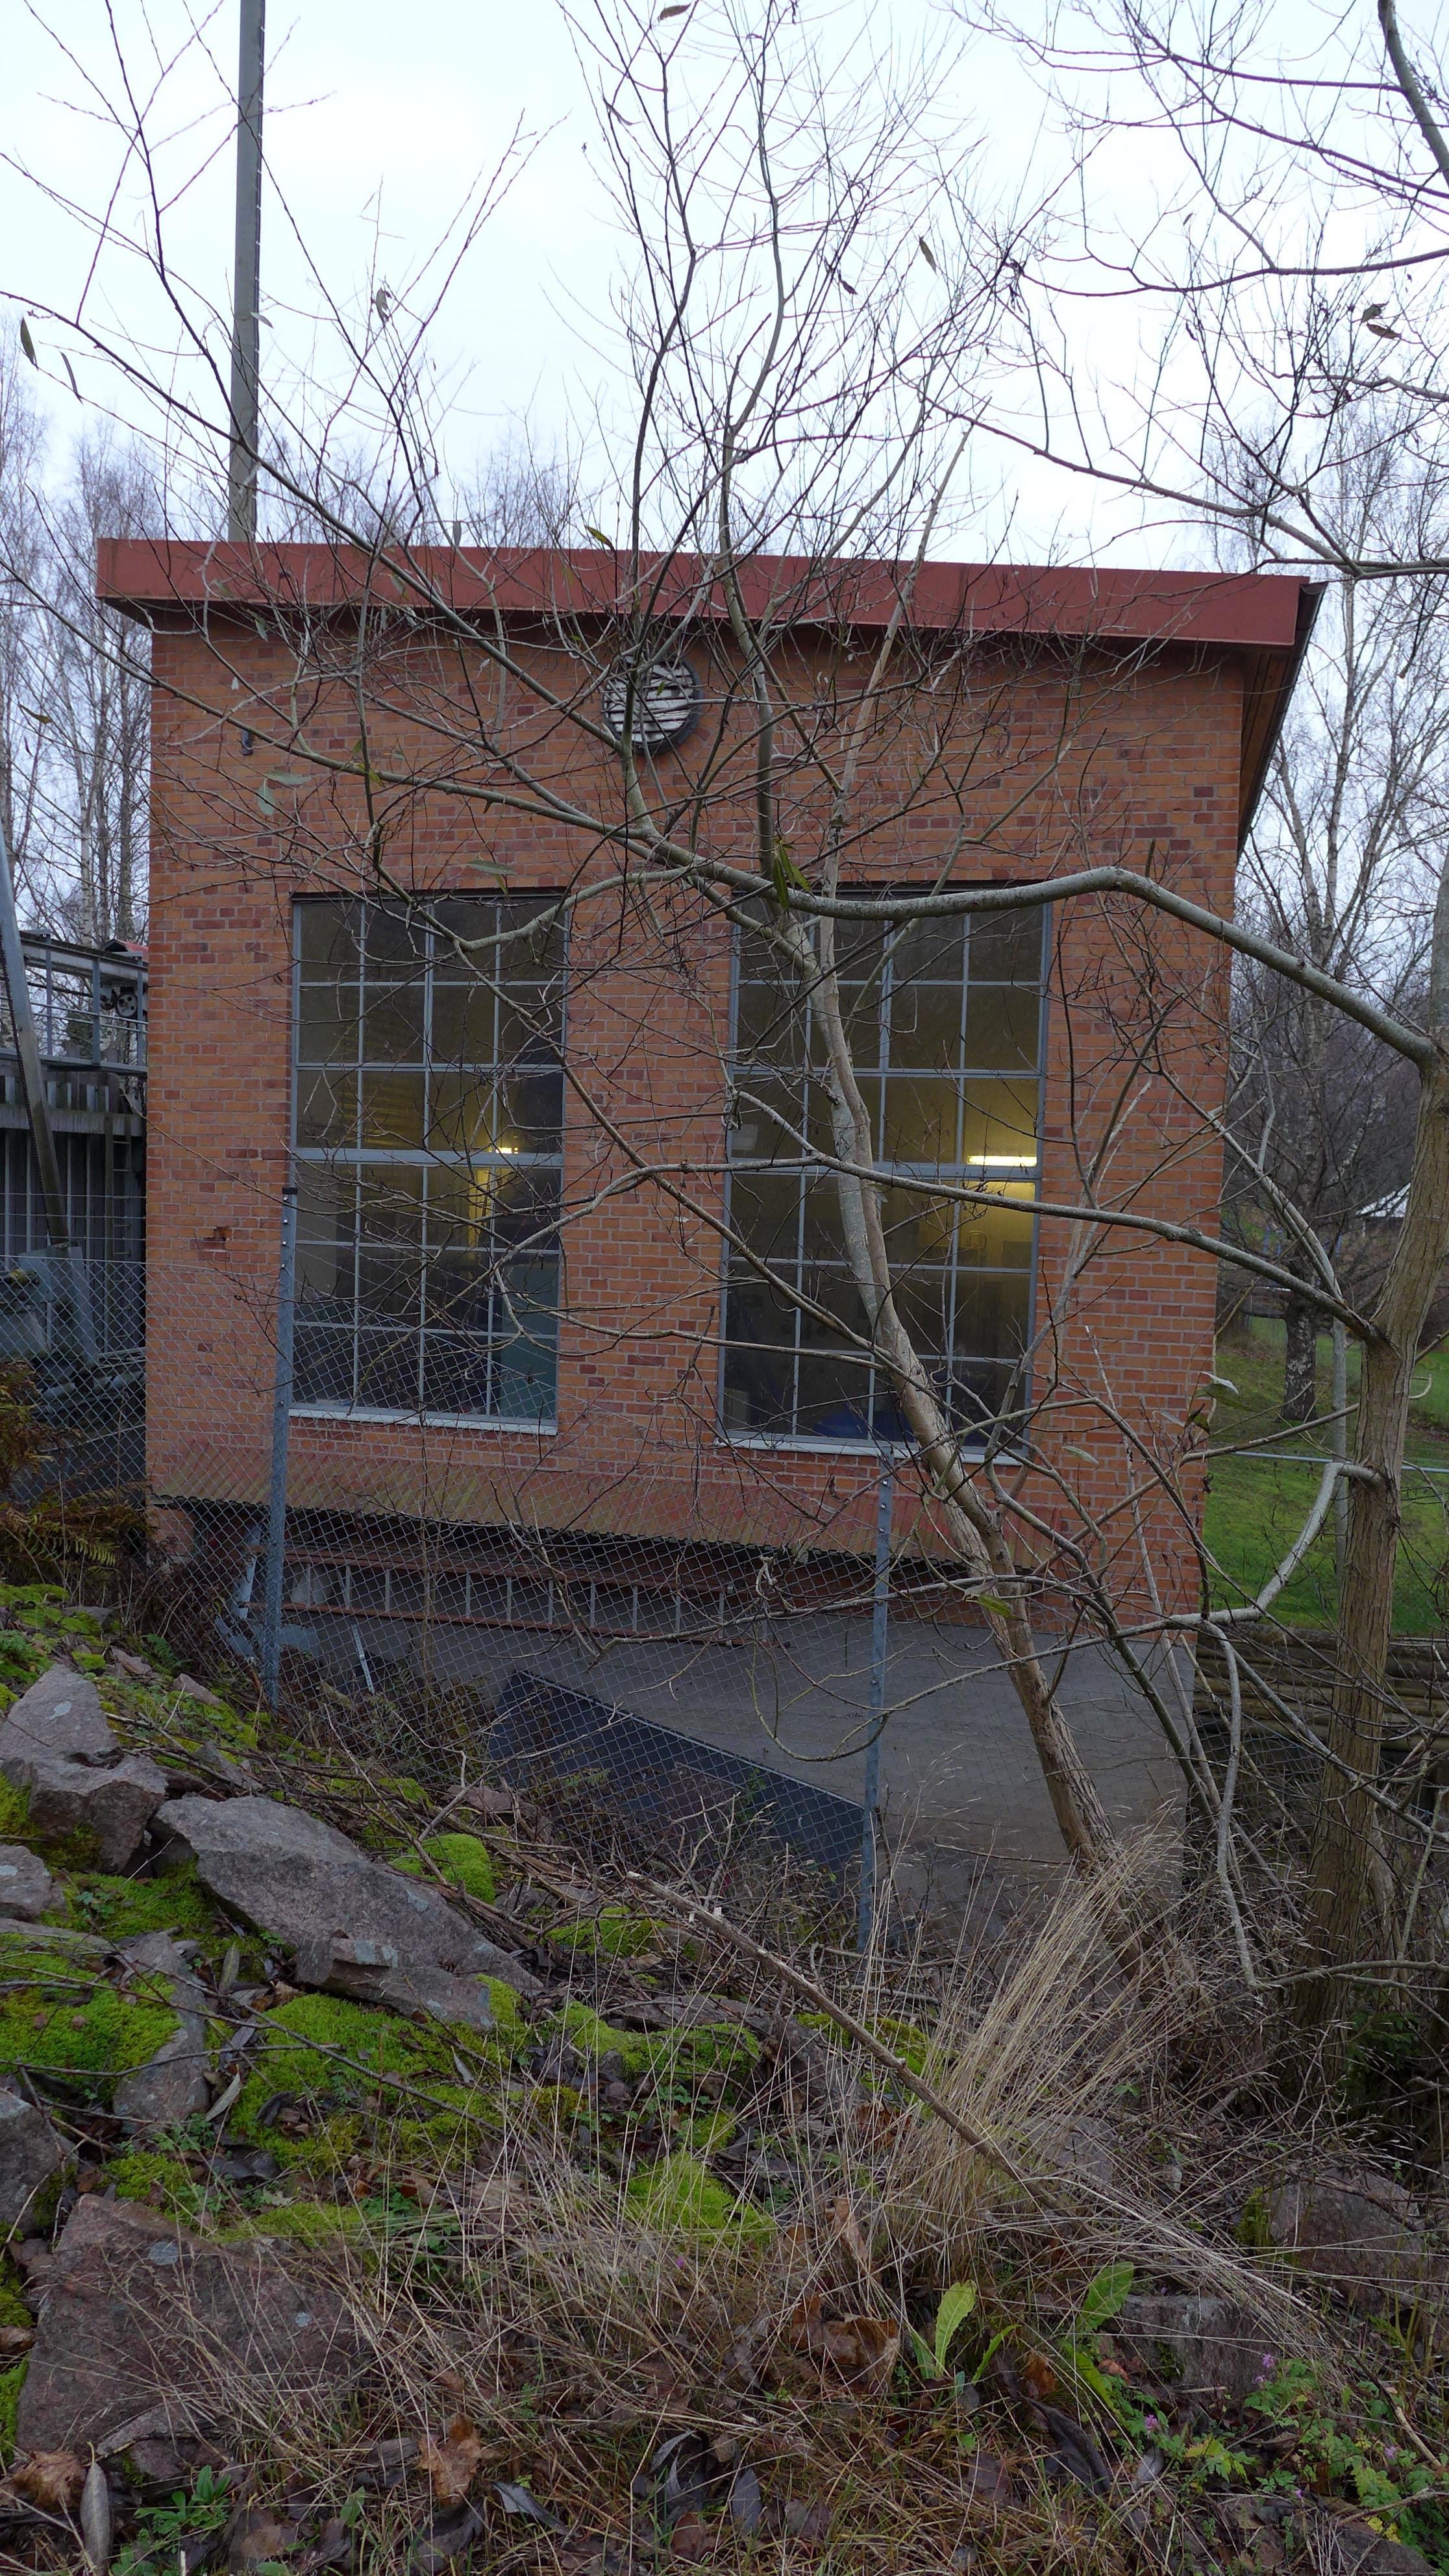 Kraftstationen har ett pulpettak med på en senare tid plåtklädd takfot. Järnfönstren är gråmålade. 